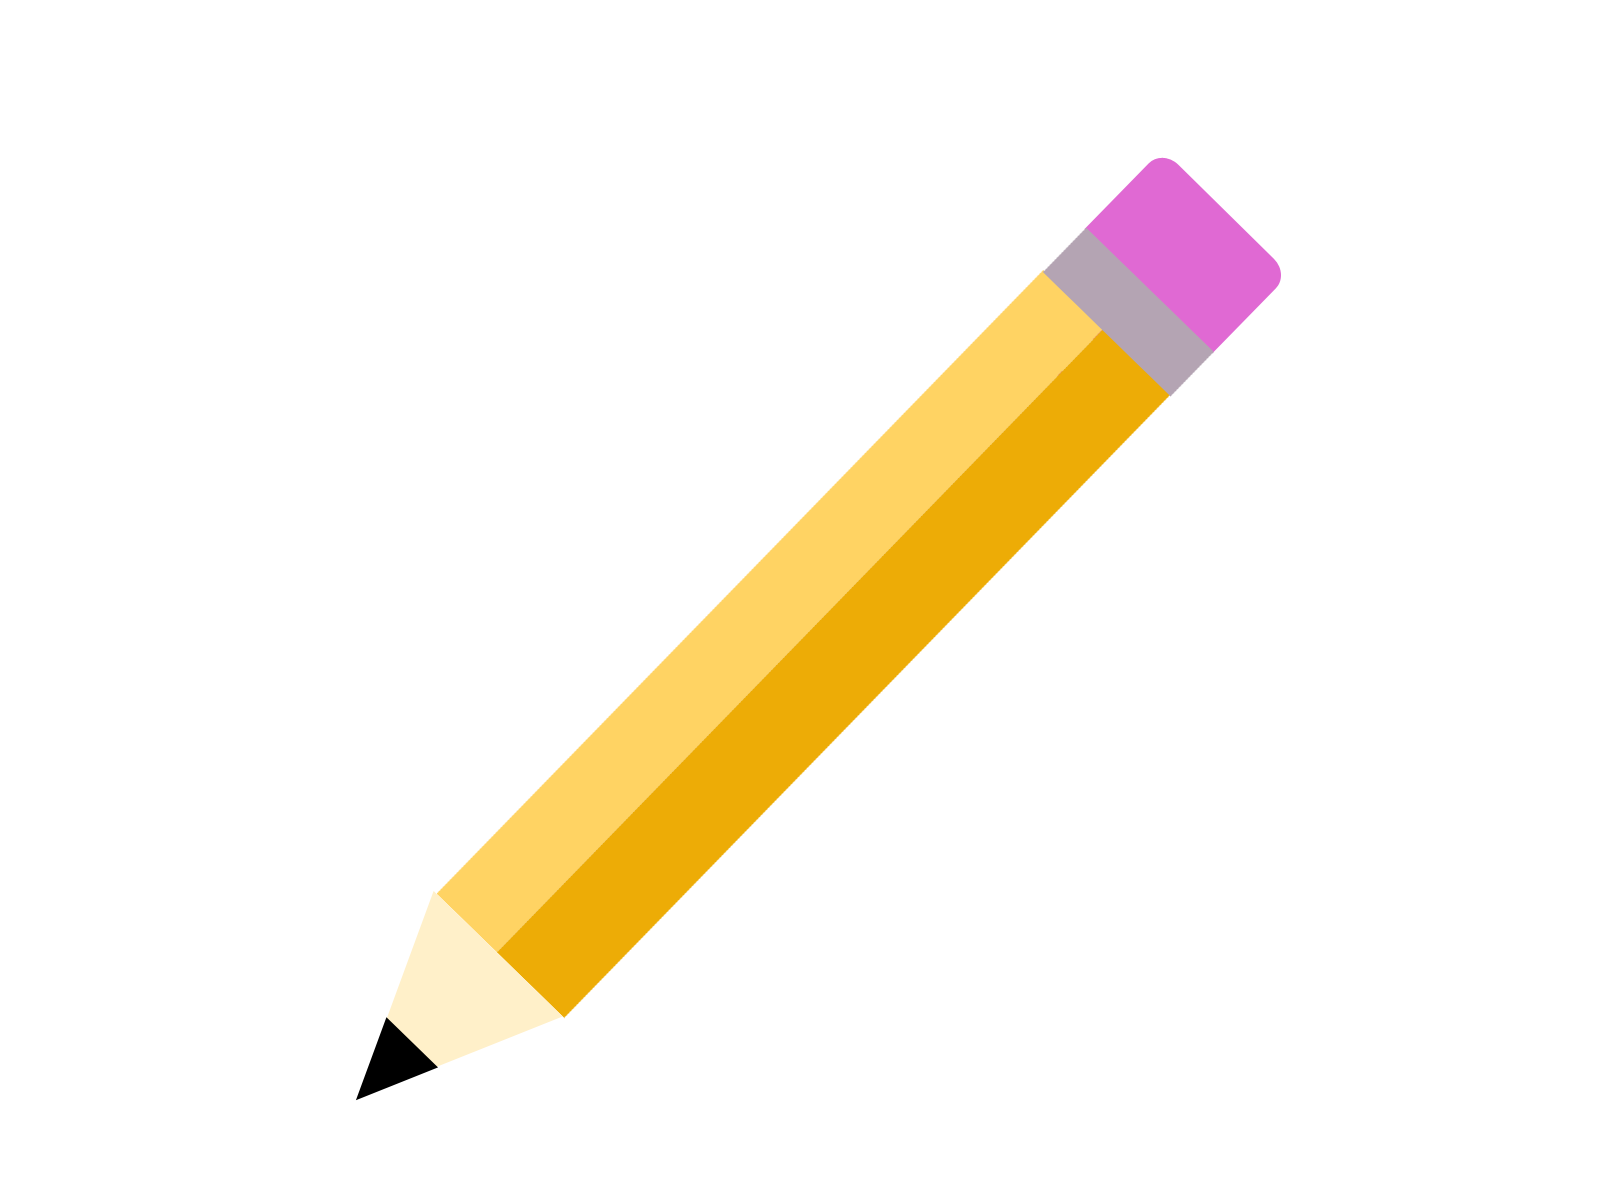 Color Pencils PNG image